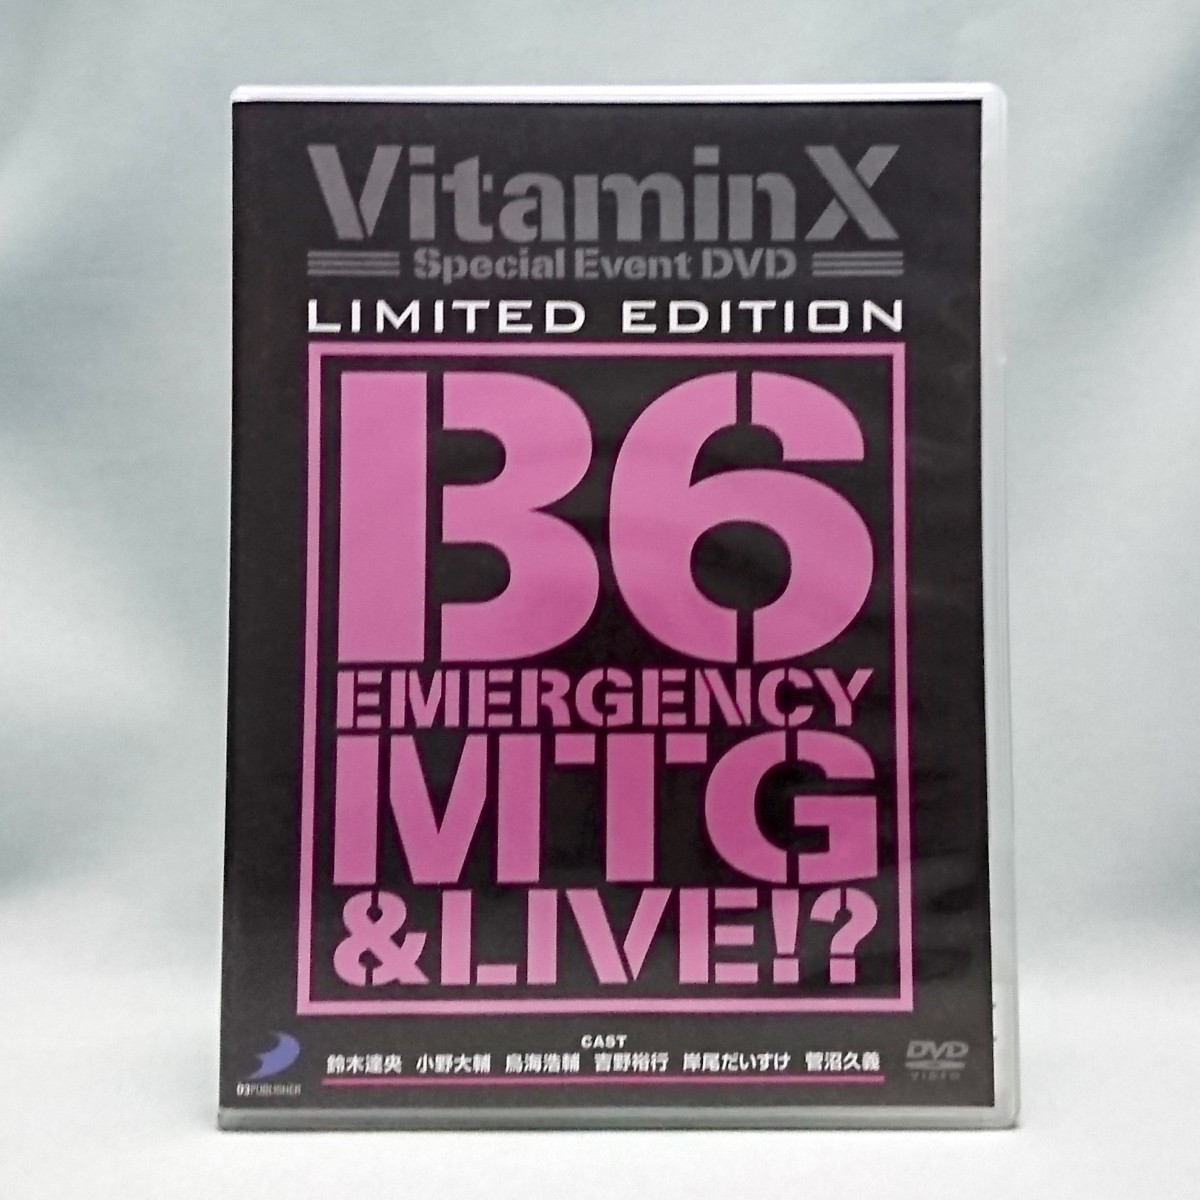 DVD / VitaminX B6緊急ミーティング & ライブ!? 限定版 MTG